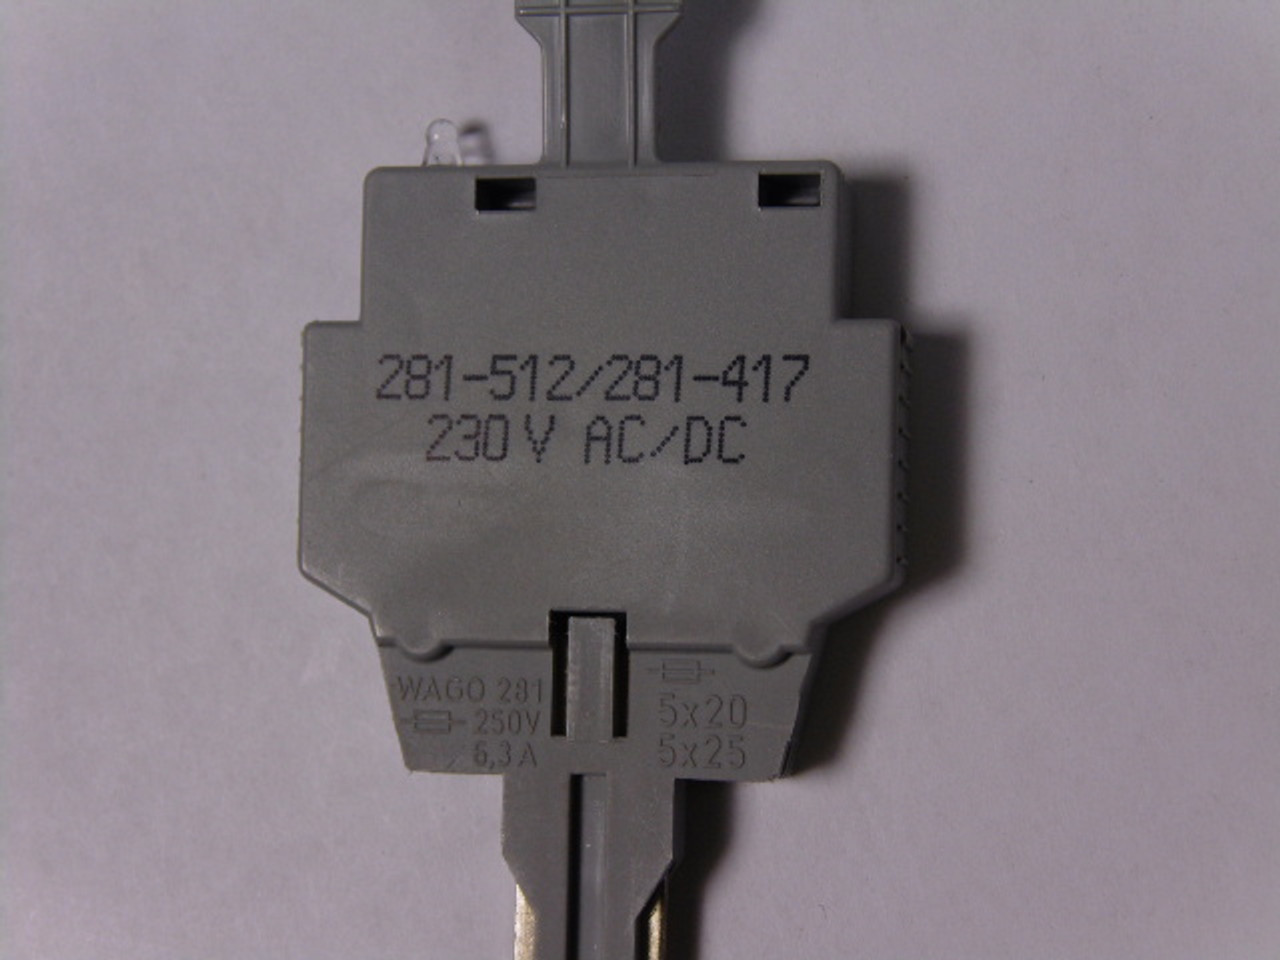 Wago 281-512/281-417 Fuse Plug With Pull Tab 230V AC/DC 6.3A USED